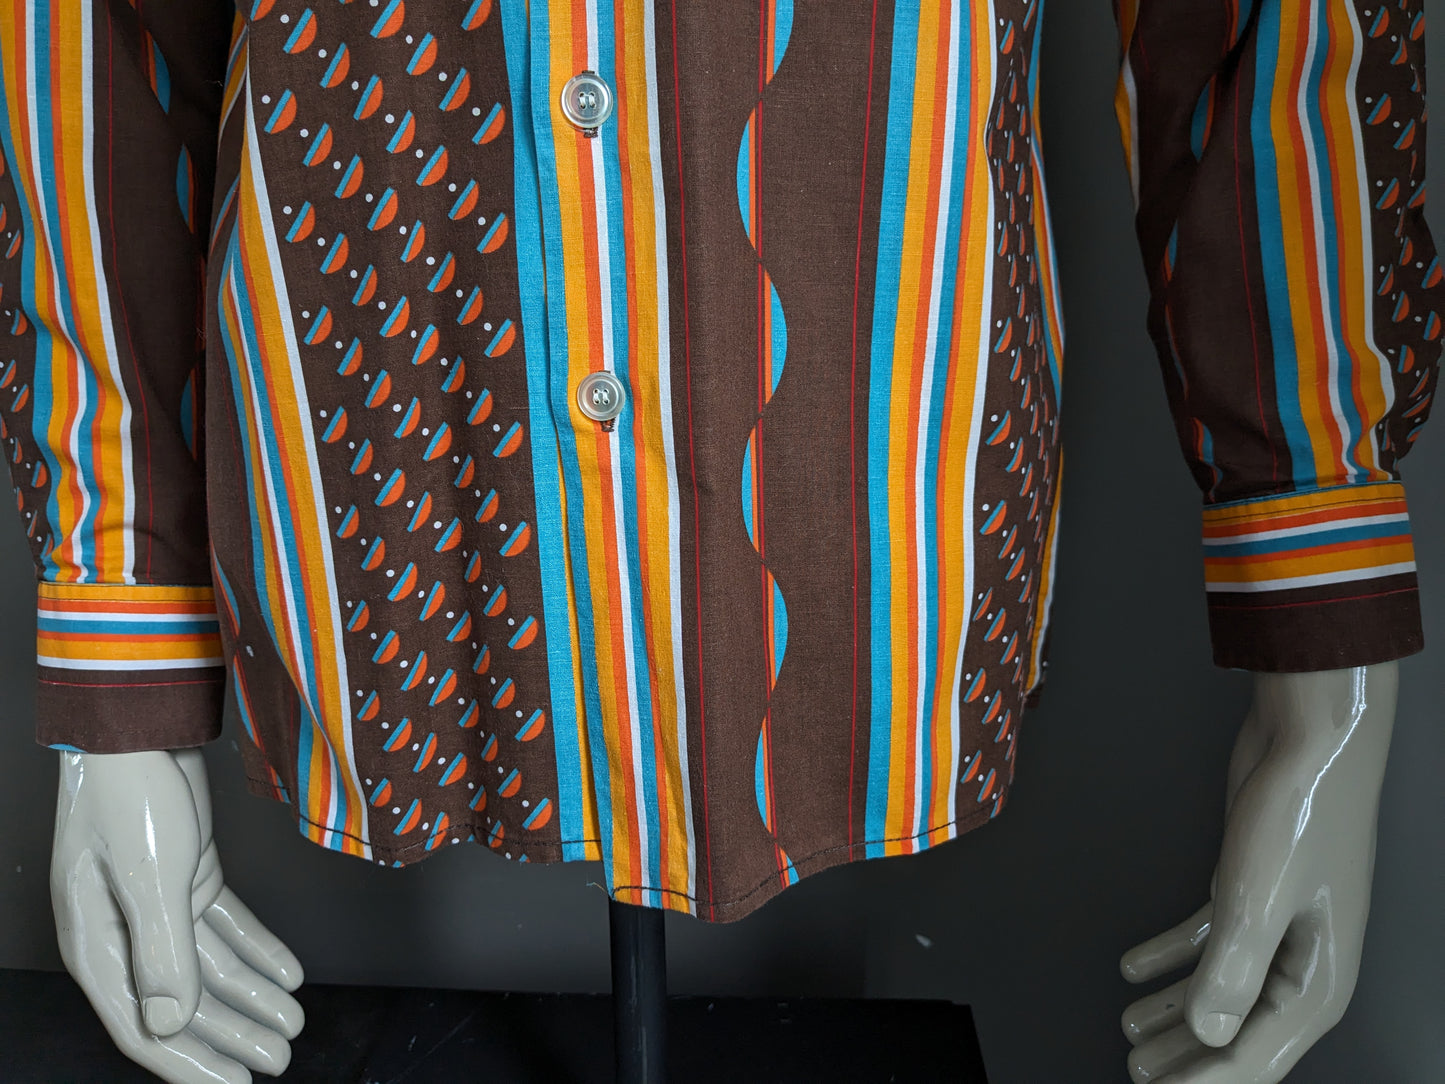 Tendance vintage des années 70 avec le collier. Impression en bleu orange marron. Taille L.